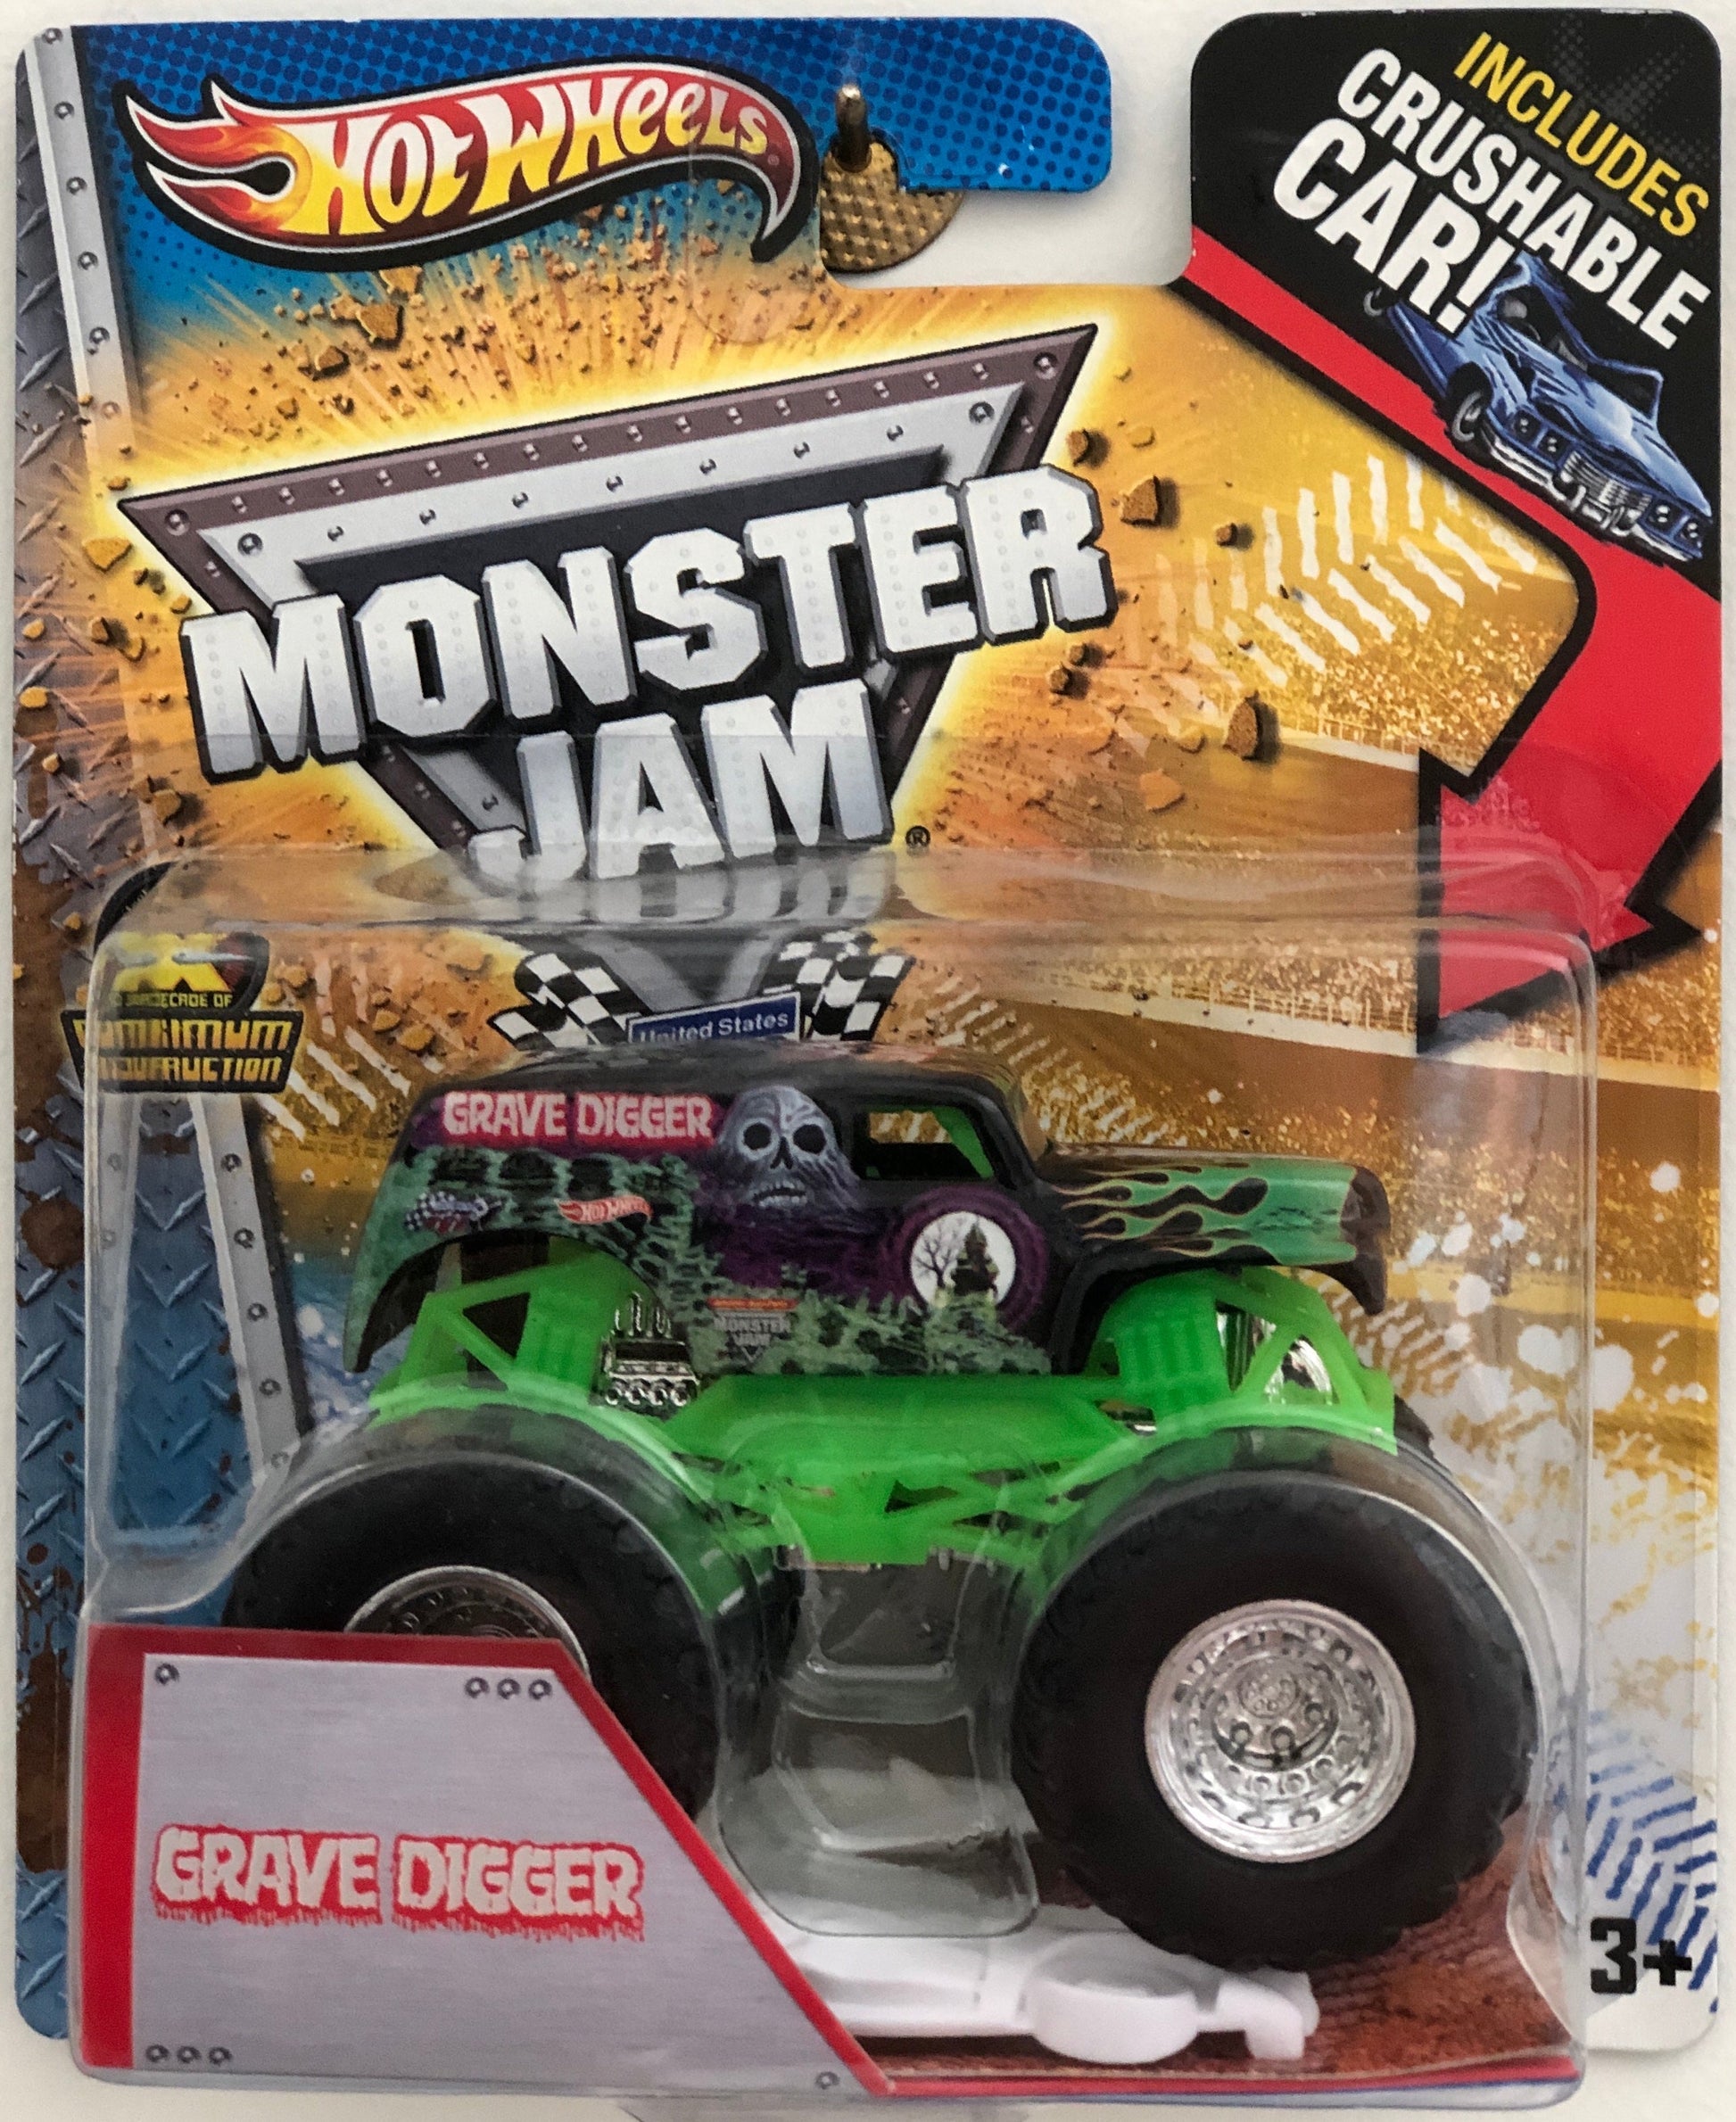  Mattel - Hot Wheels - Monster Jam - Grave Digger - diecast truck